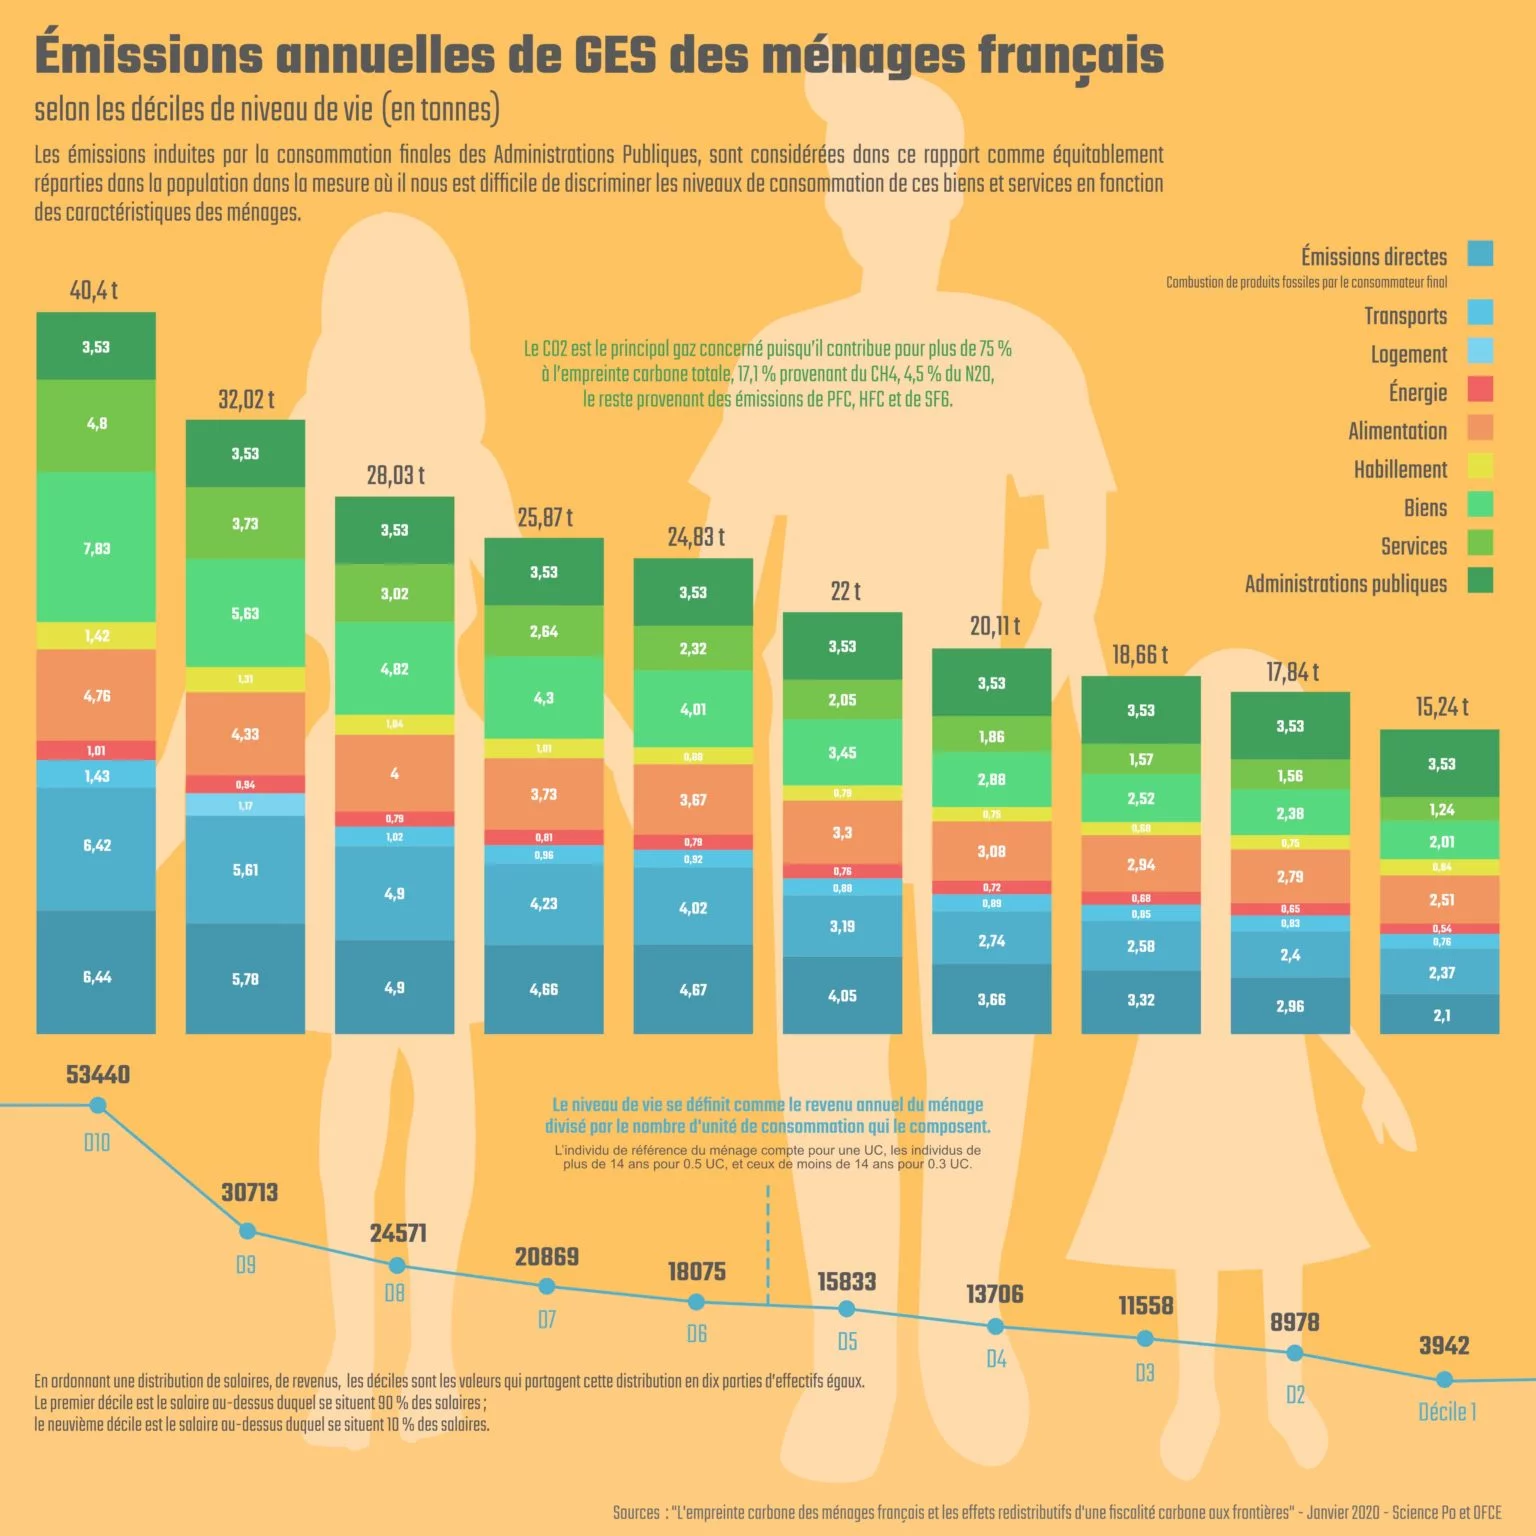 Infographie représentant un diagramme en bâton, avec les différentes émissions annuelles de GES des ménages français